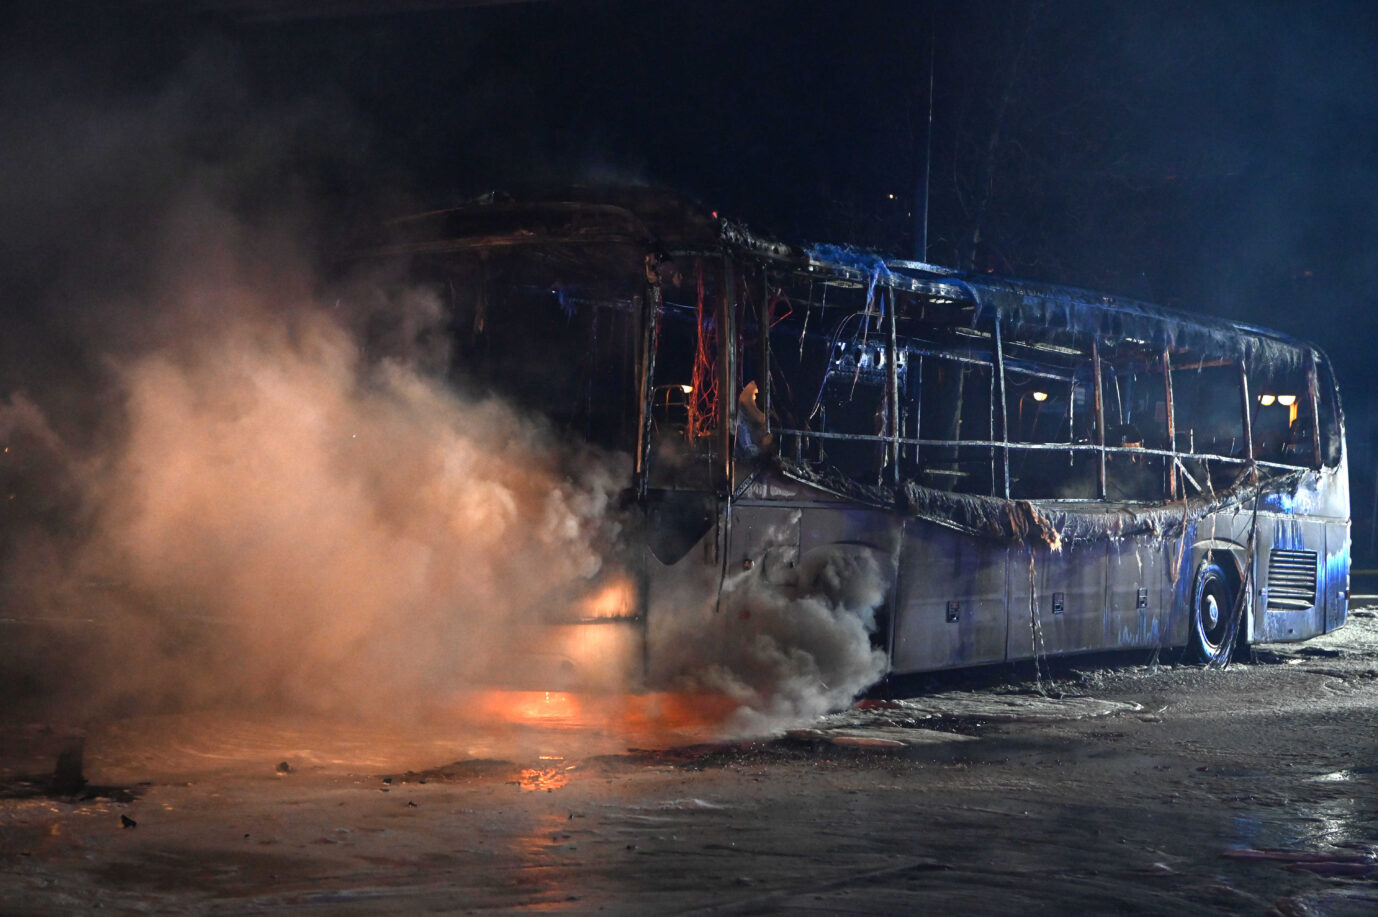 Einsatzkräfte der Feuerwehr löschen in der Silvesternacht an der Sonnenallee im Bezirk Neukölln einen brennenden Bus, der von Unbekannten angezündet worden war.